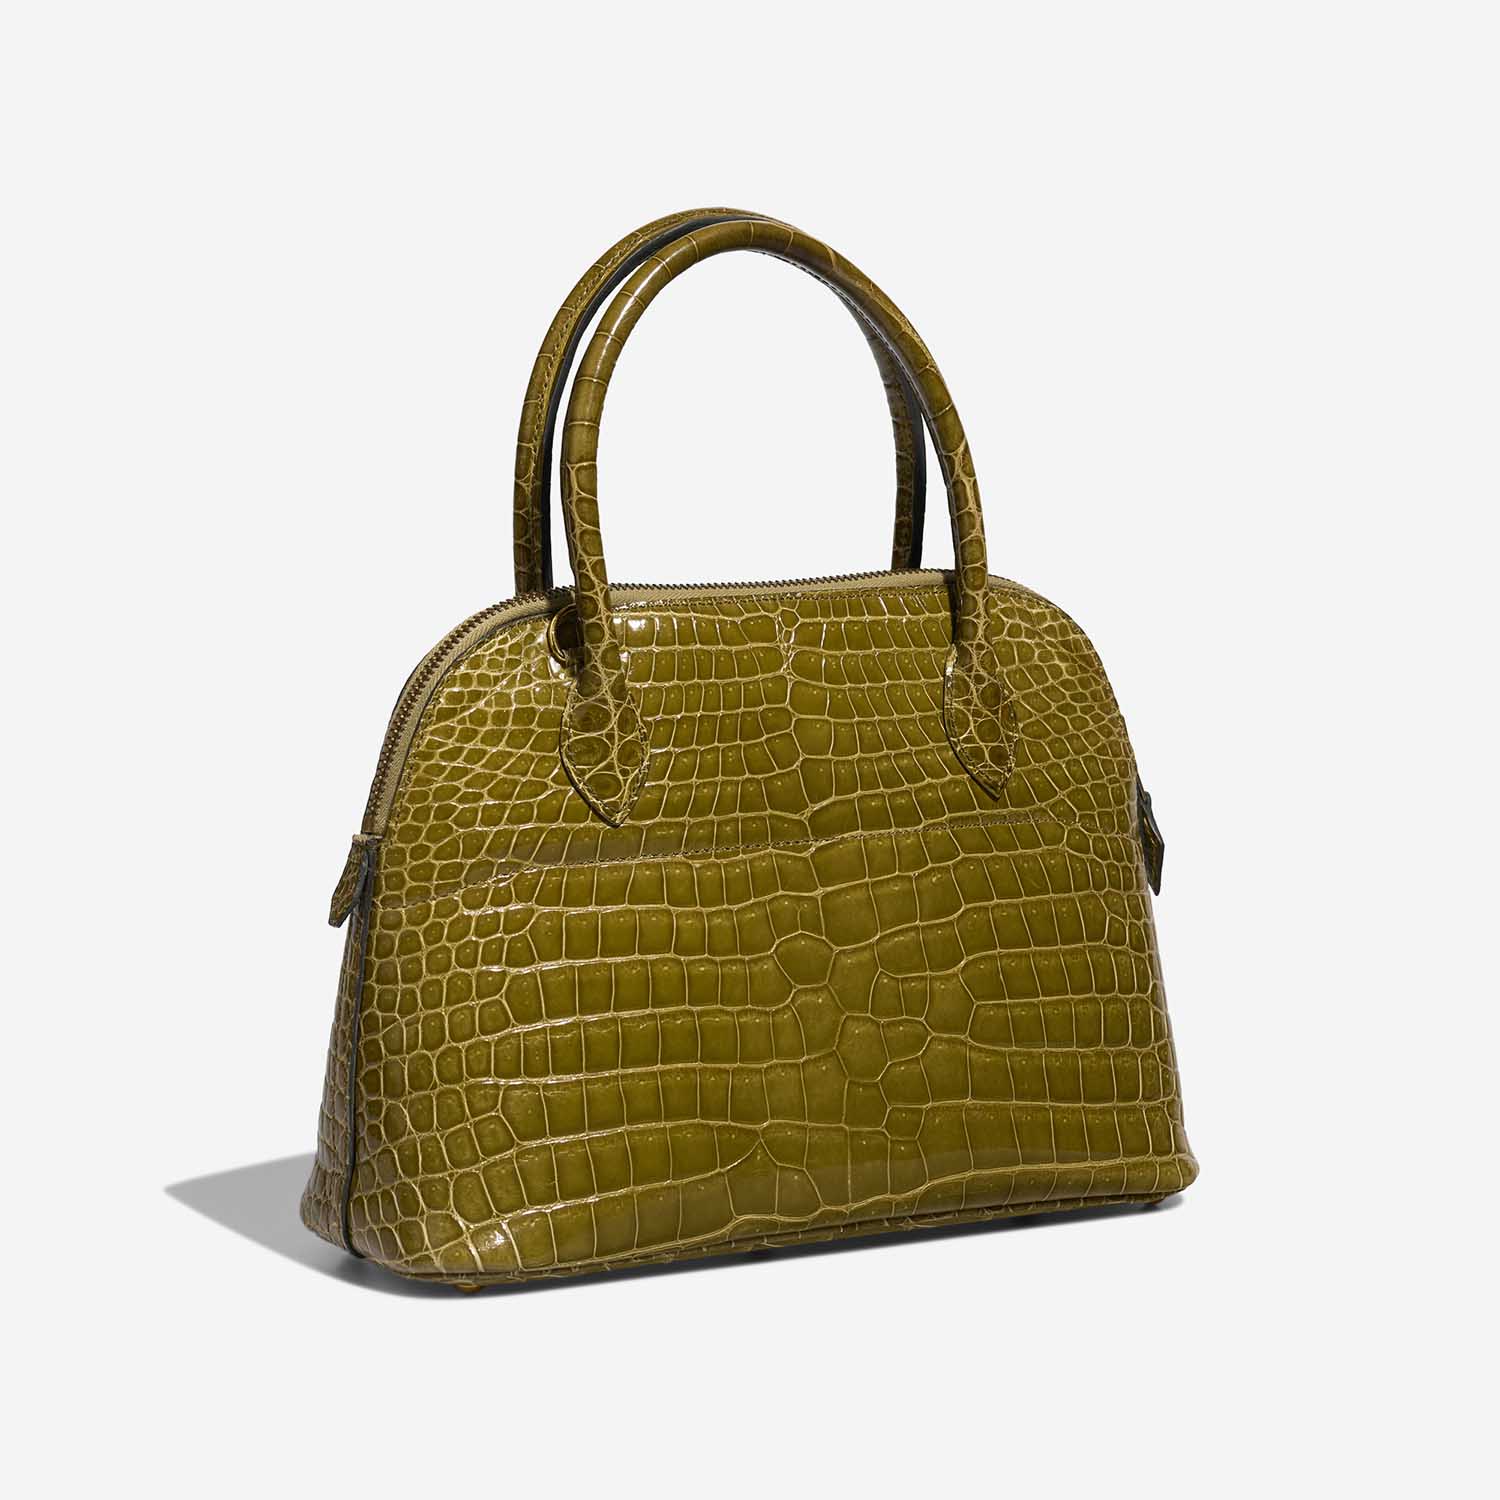 Hermès Bolide 27 VertAnis Side Back | Verkaufen Sie Ihre Designer-Tasche auf Saclab.com